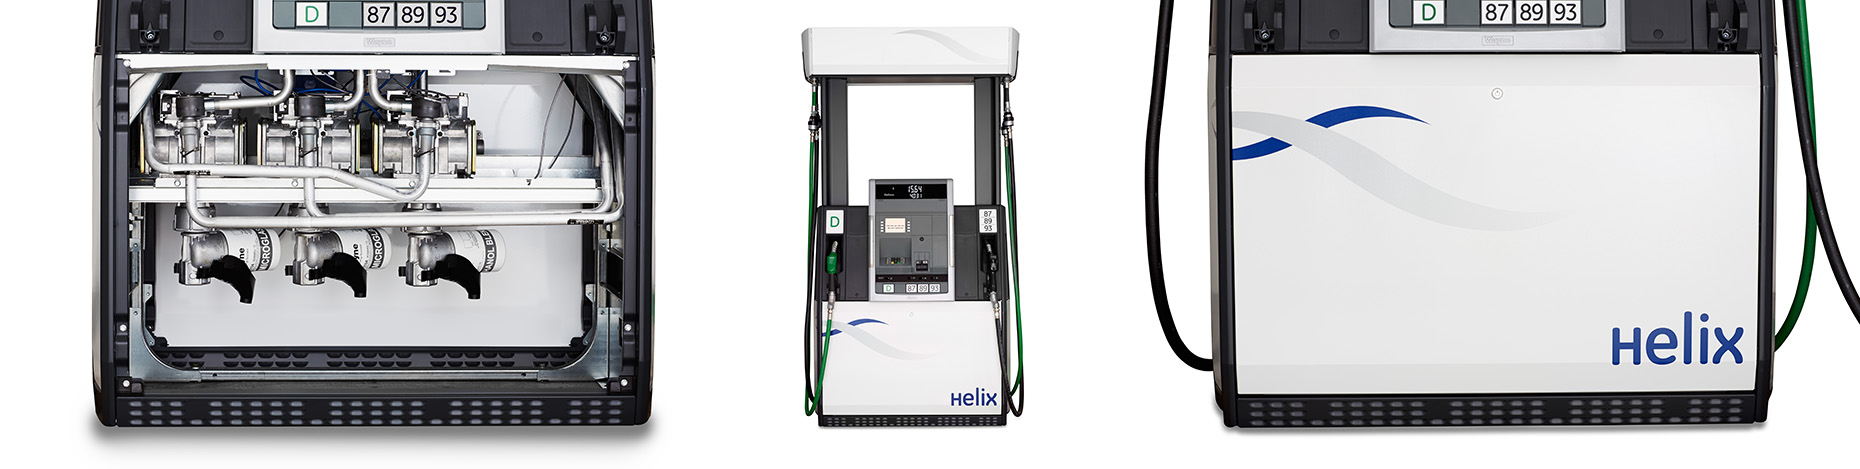 5000_Wayne Helix Fuel Dispenser_Stence_Image_05172013_ENG_8346-DUP.jpg